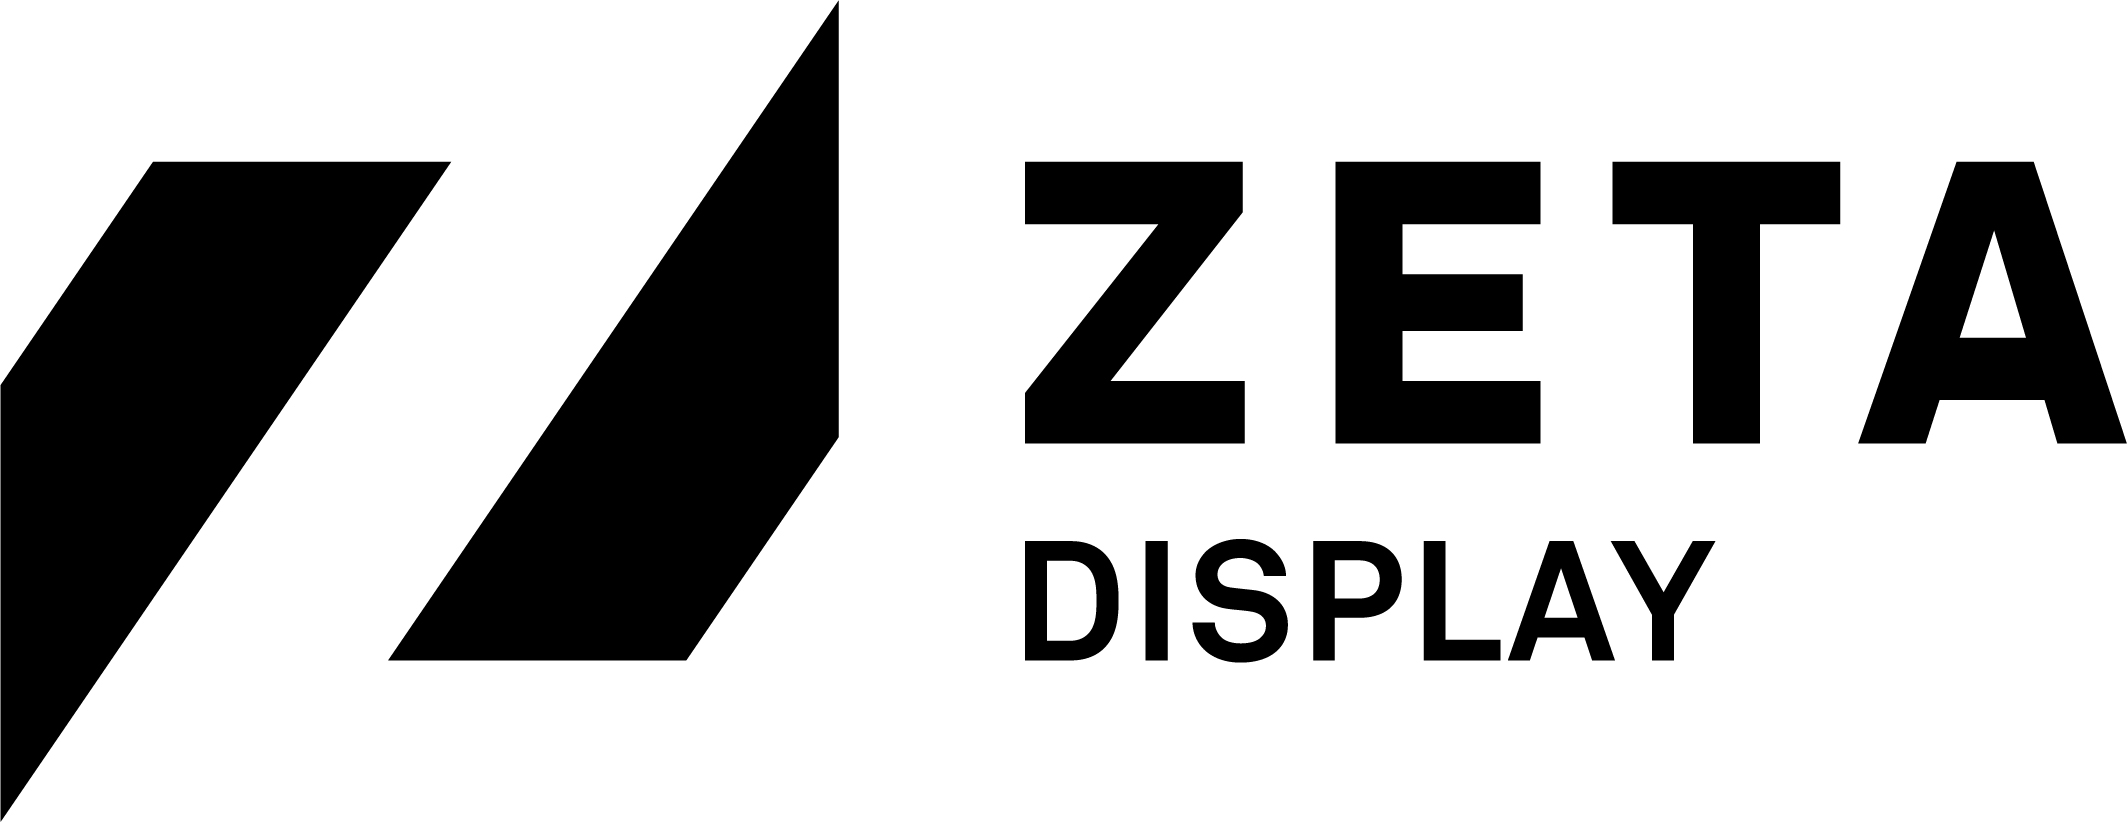 ZetaDisplay Germany GmbH logo.